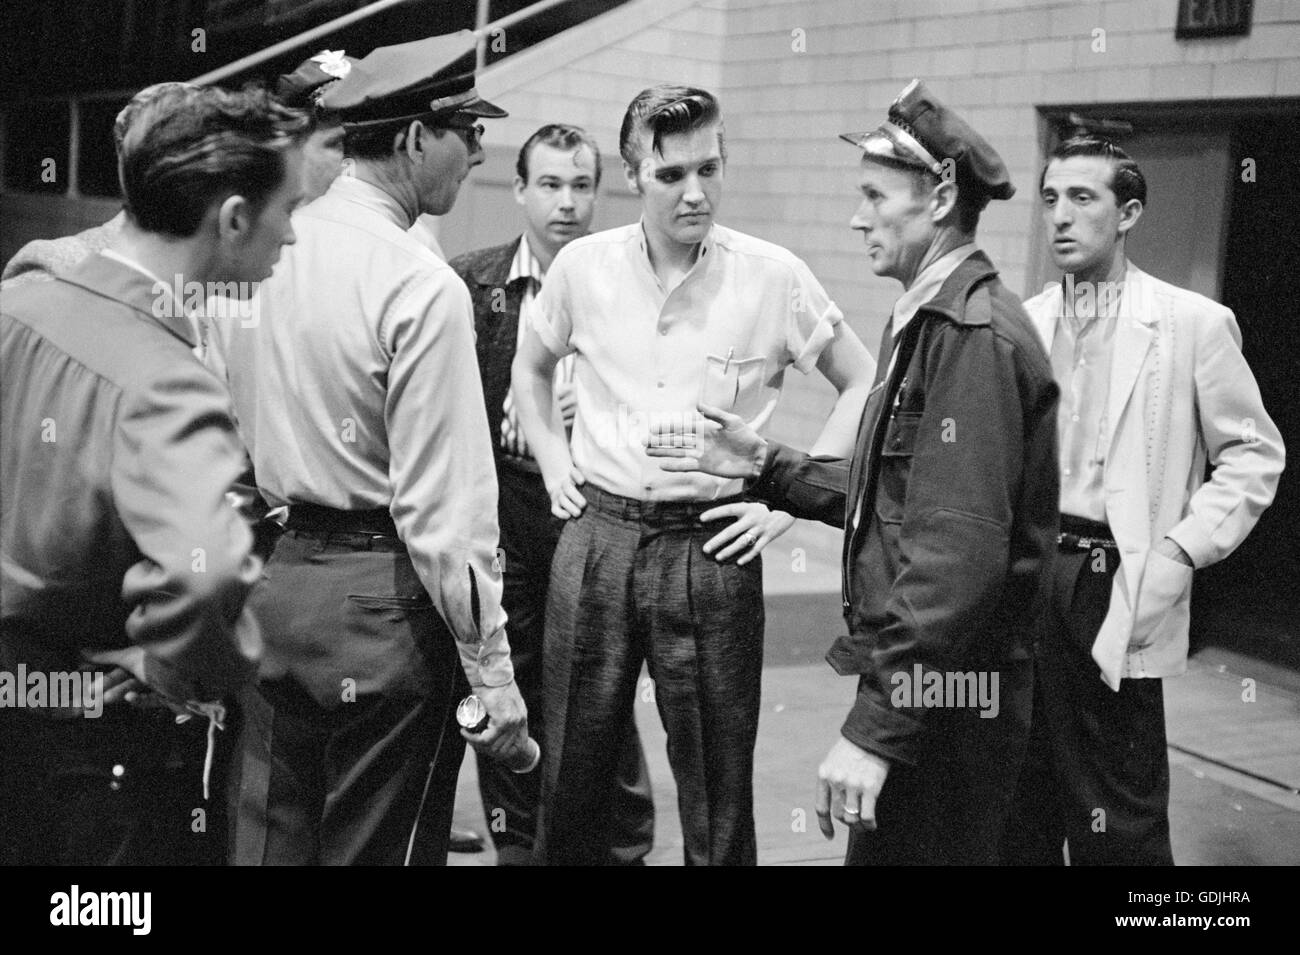 Elvis Presley et accompagnements pour parler avec les agents de police avant d'une performance Banque D'Images